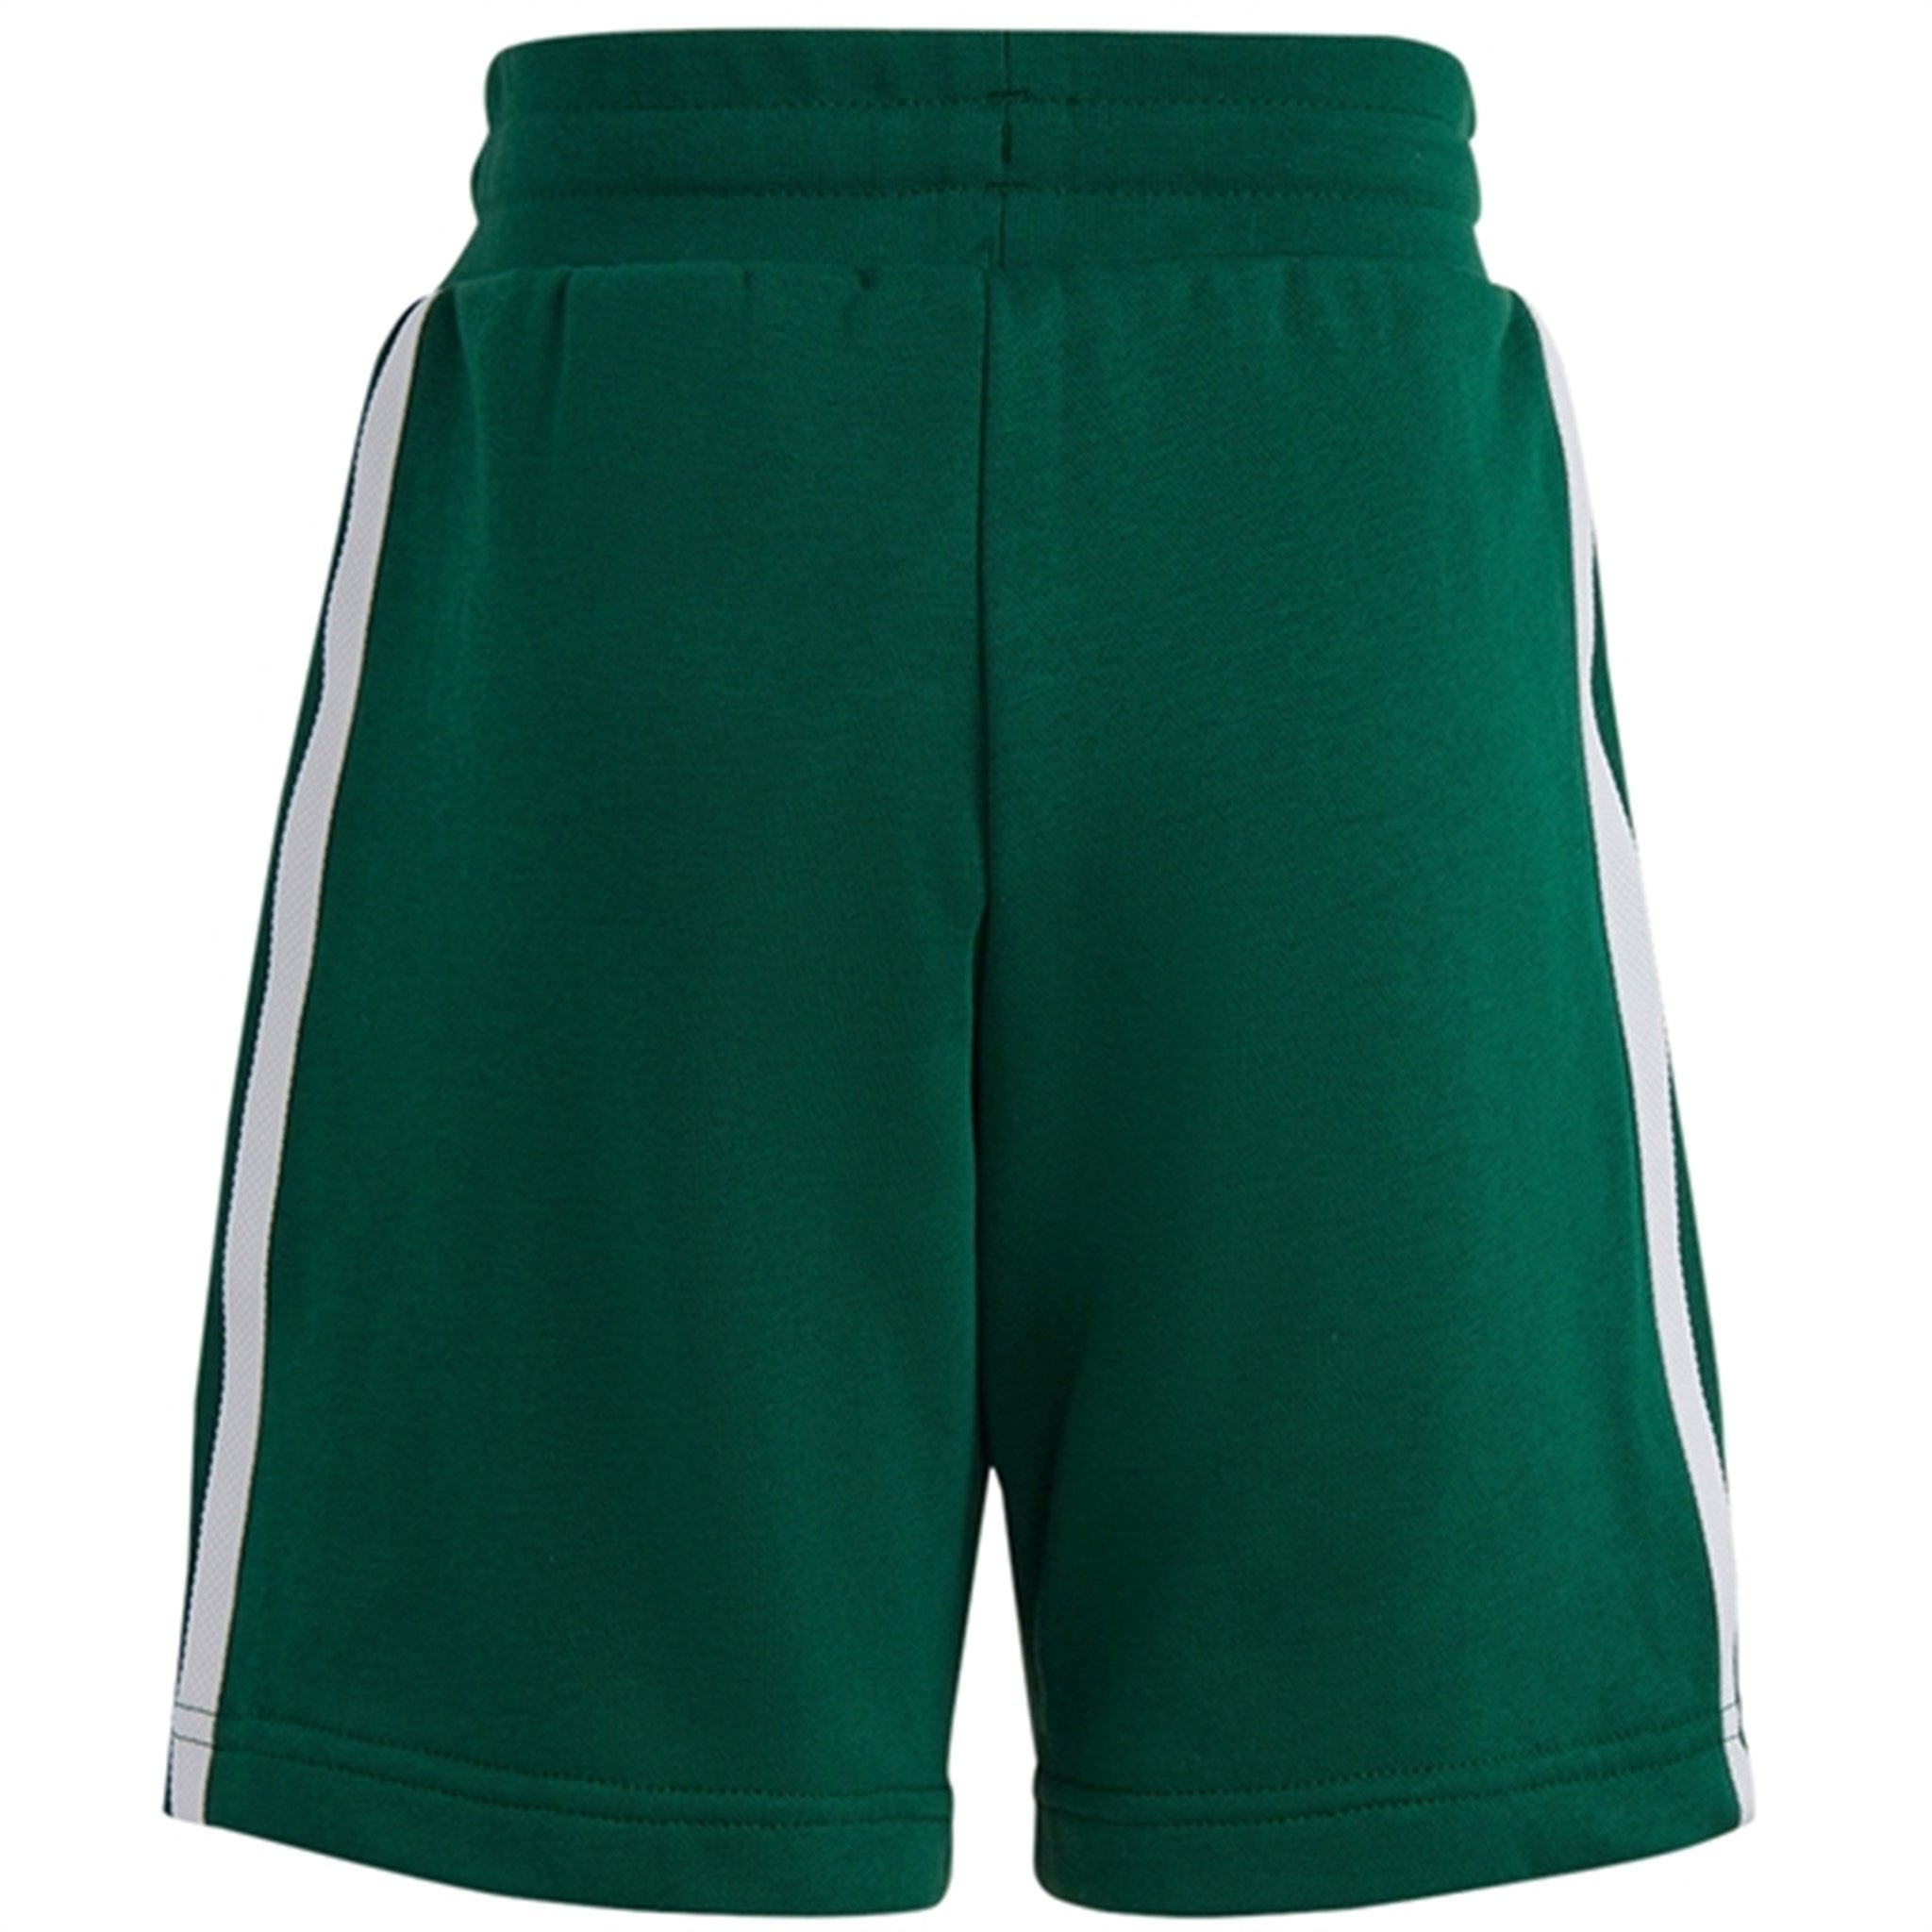 adidas Originals Dark Green Shorts Tee Sett 7